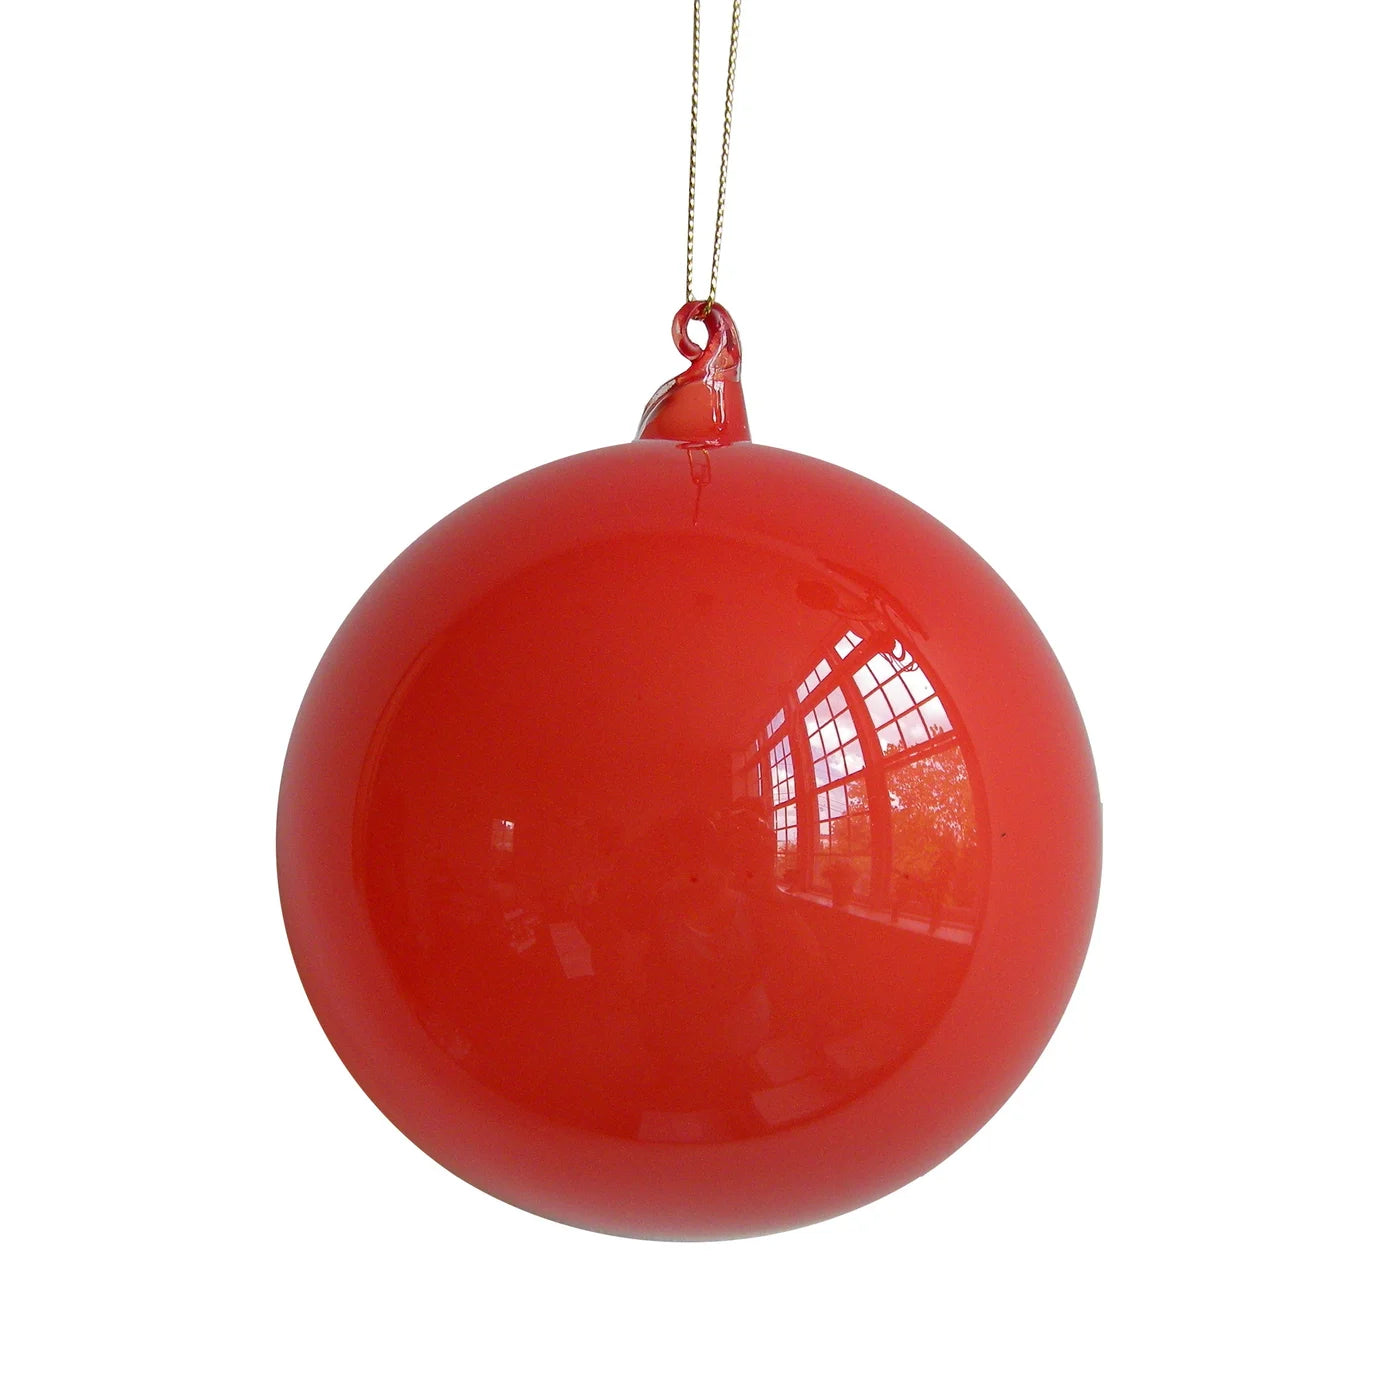 Bubblegum Glass Ornament 100mm